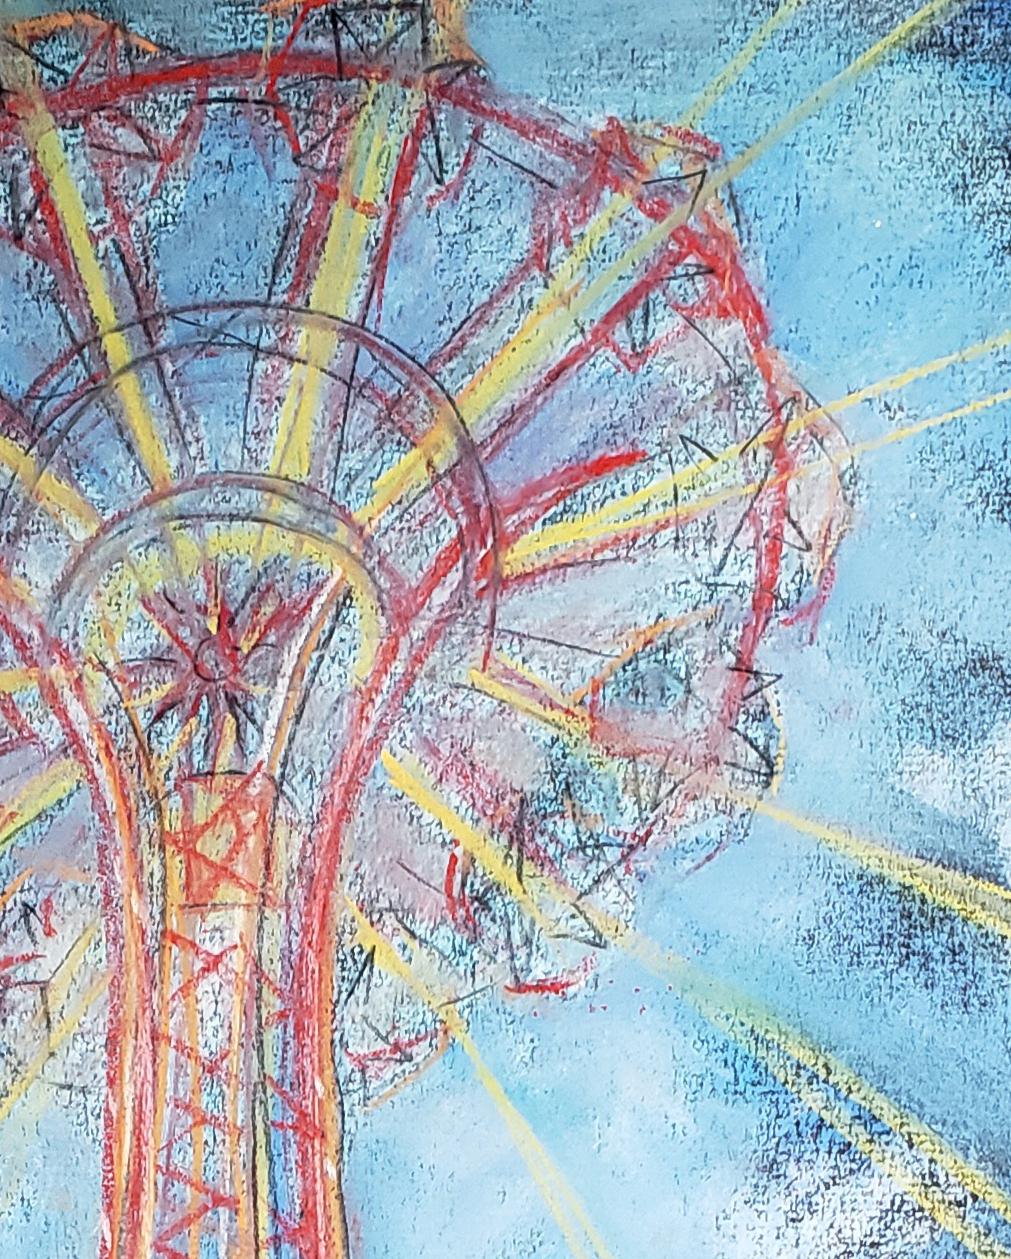 Fallschirmsprung, Schaukelstrahlen, Coney Island (Expressionismus), Art, von Janet Morgan